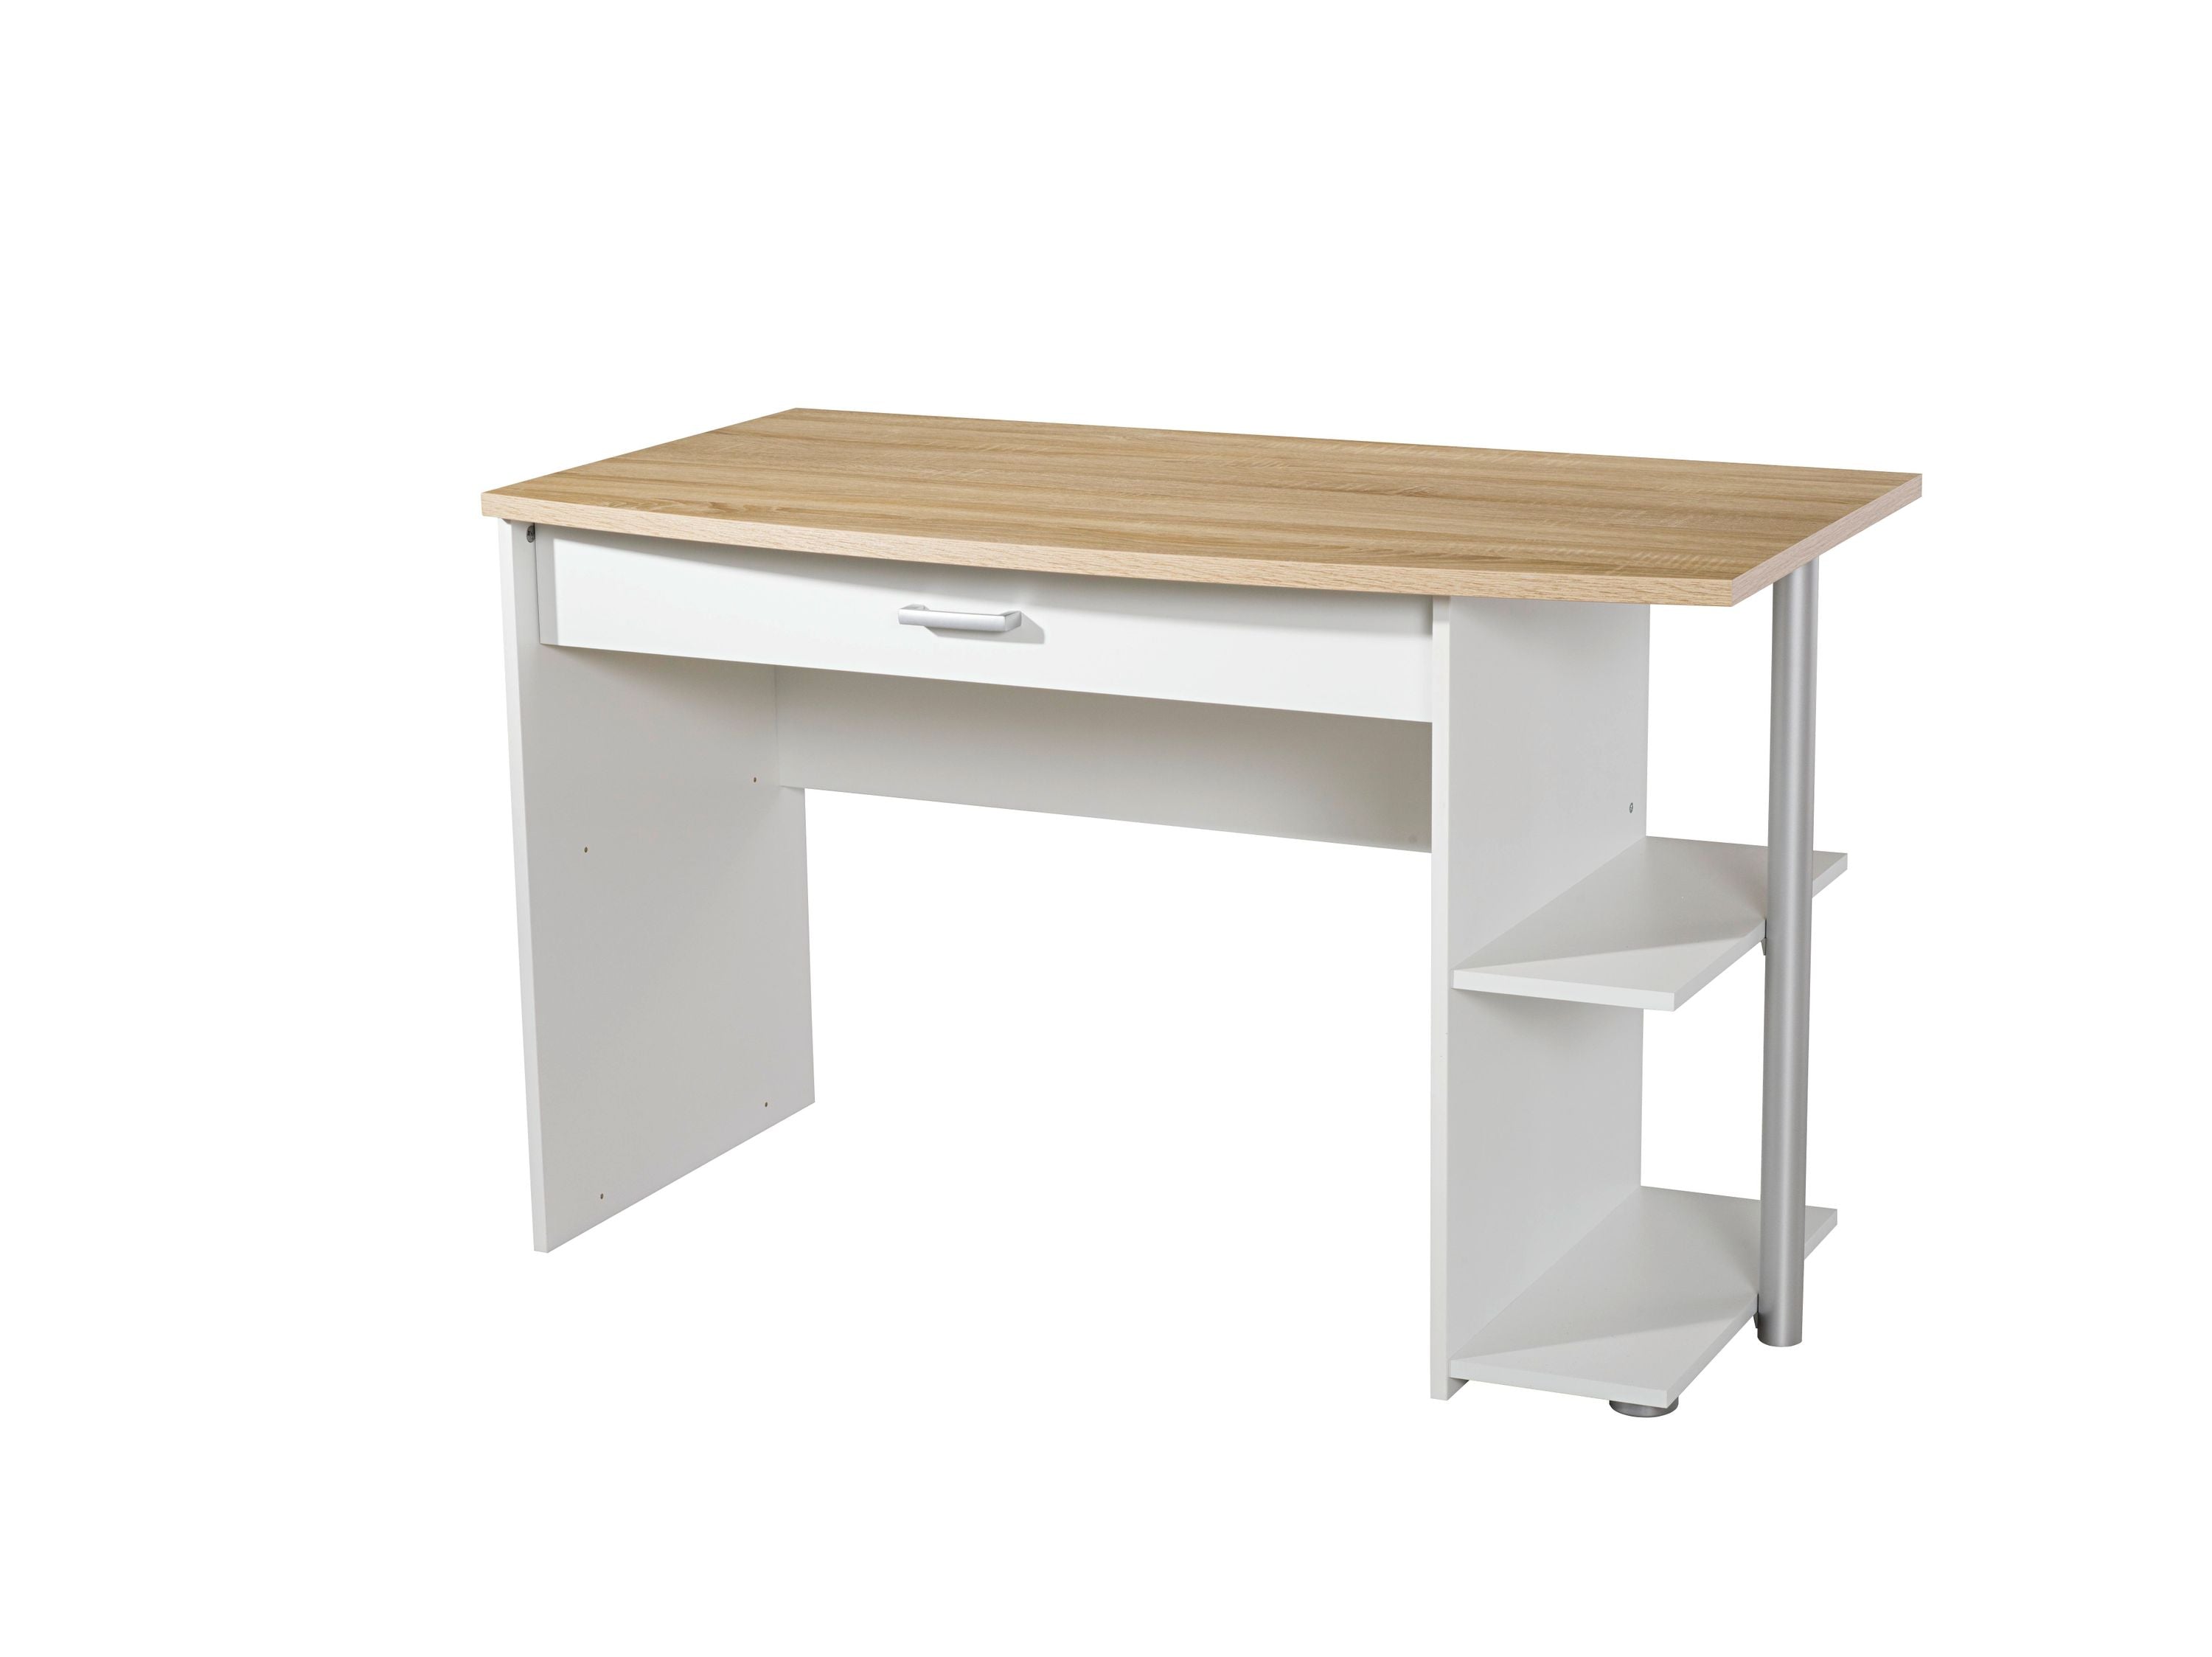 Schreibtisch Acun 120*64 cm weiß - grau